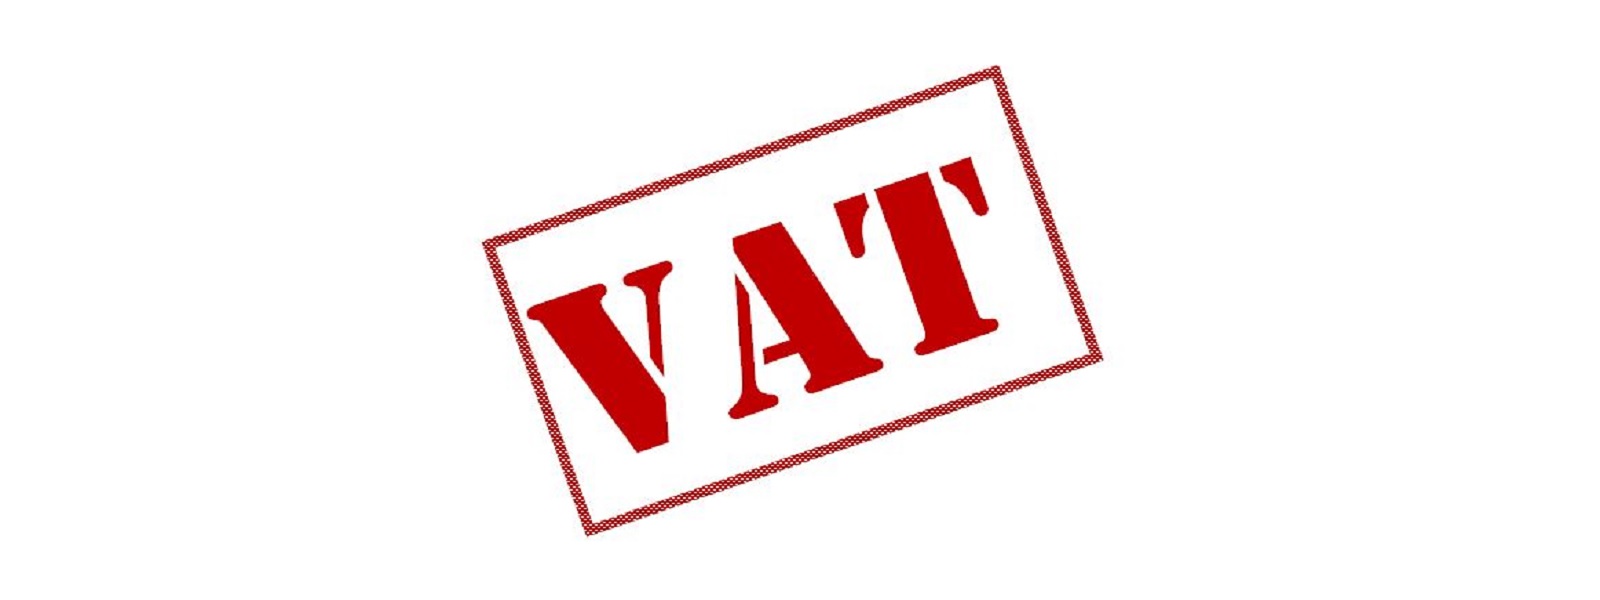 ஐரோப்பிய நாடுகளுக்கான தபால் பொதிகளுக்கு VAT வரி